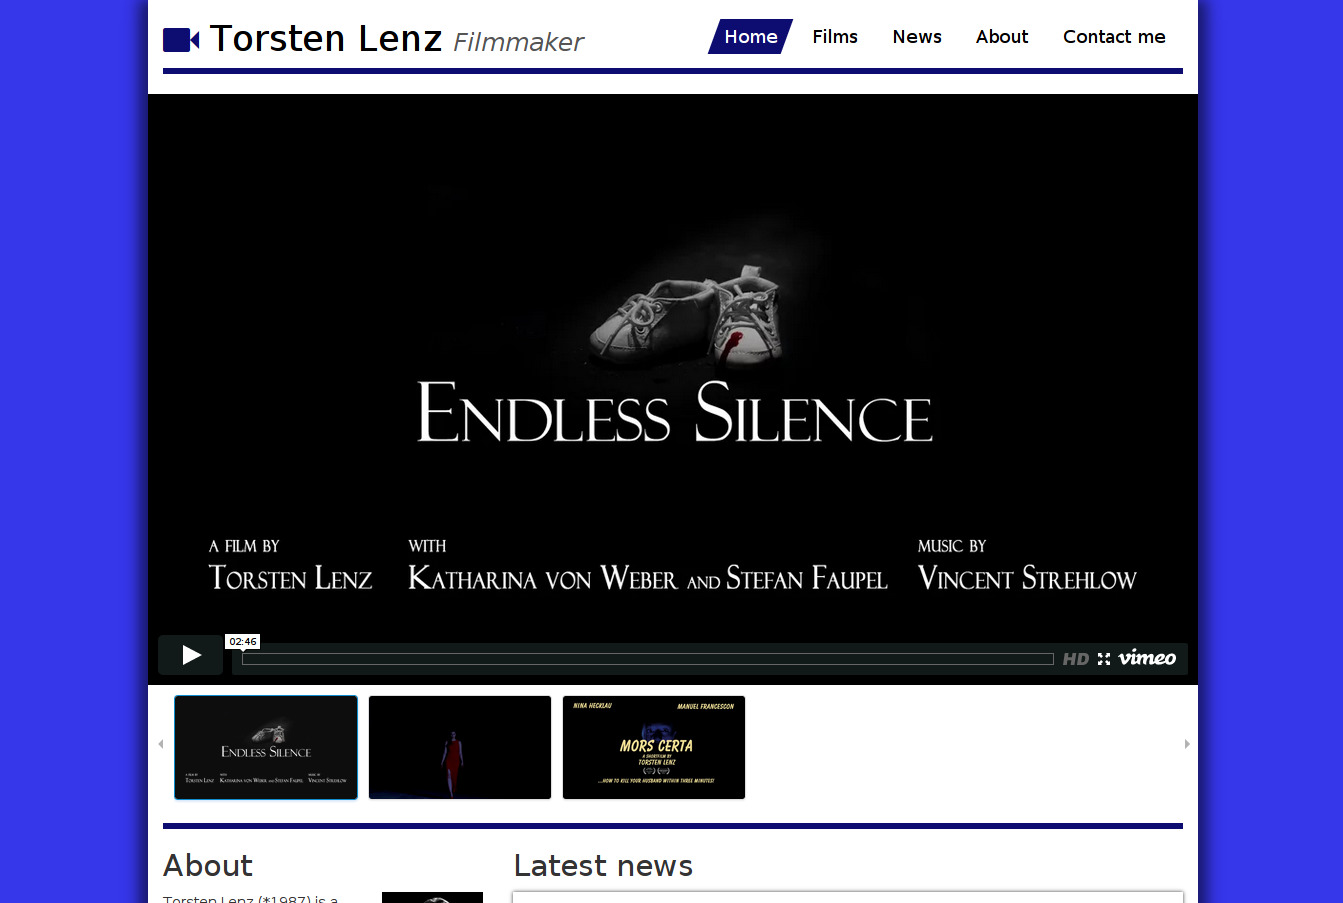 Webseite von Filmemacher Torsten Lenz: Startseite mit Videoplayer